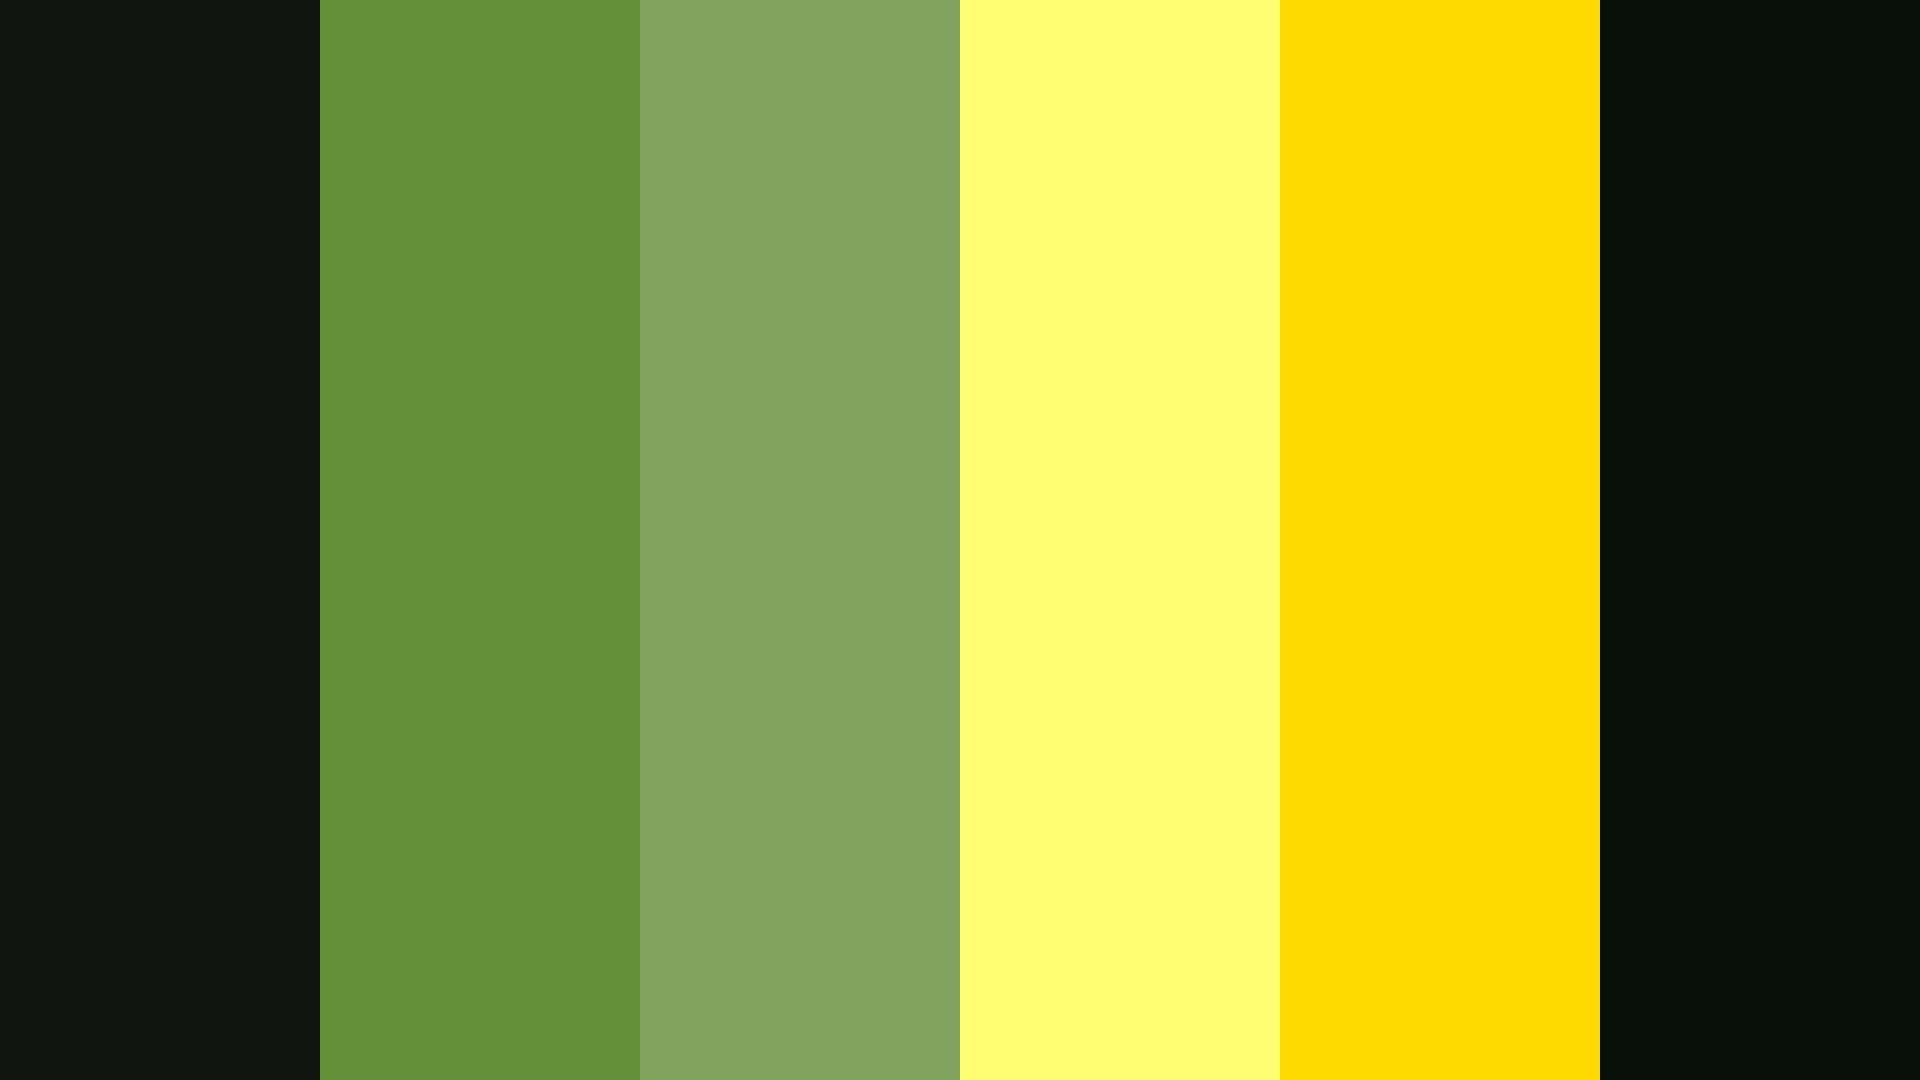 Цвет темный желтовато зеленый. Цветовая палитра желтый черный. Сочетание цветов салатовый черный. Черный желтый зеленый. Палитра цветов жёлтый чёрный зелёный.